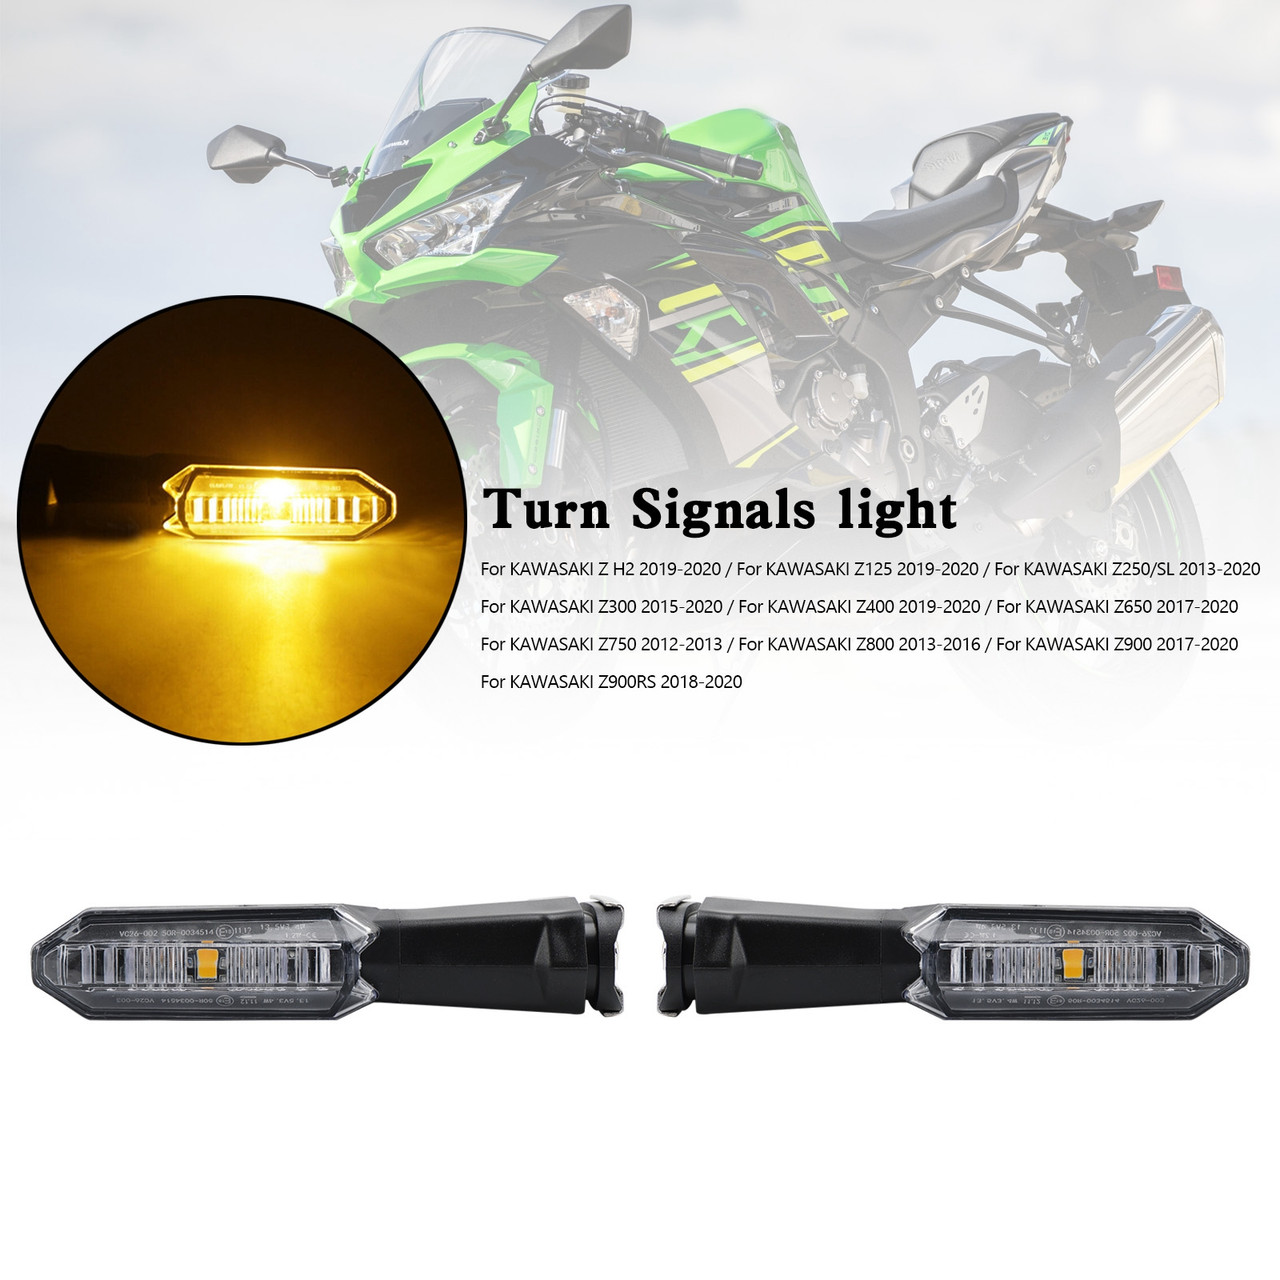 Turn Signals light For Kawasaki Z125 Z250 Z400 Z650 Z750 Z800 Z900 clear